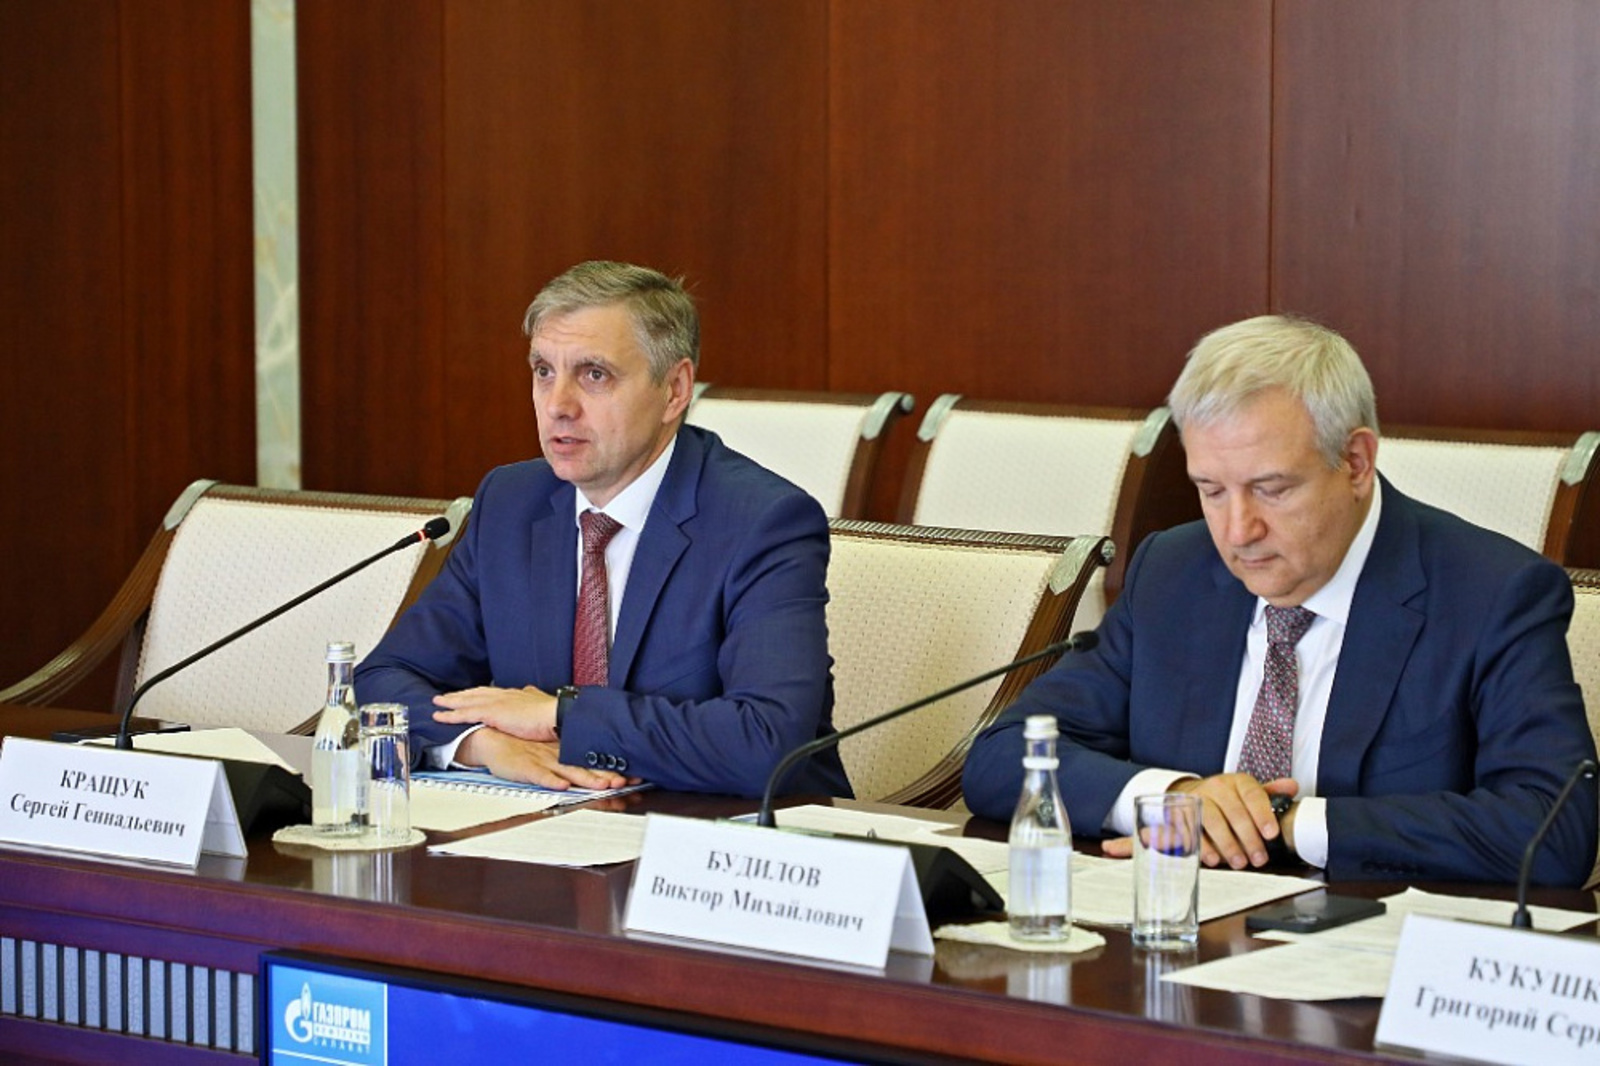 Радий Хабиров пожелал успешной работы новому руководителю ООО «Газпром нефтехим Салават» Сергею Кращуку